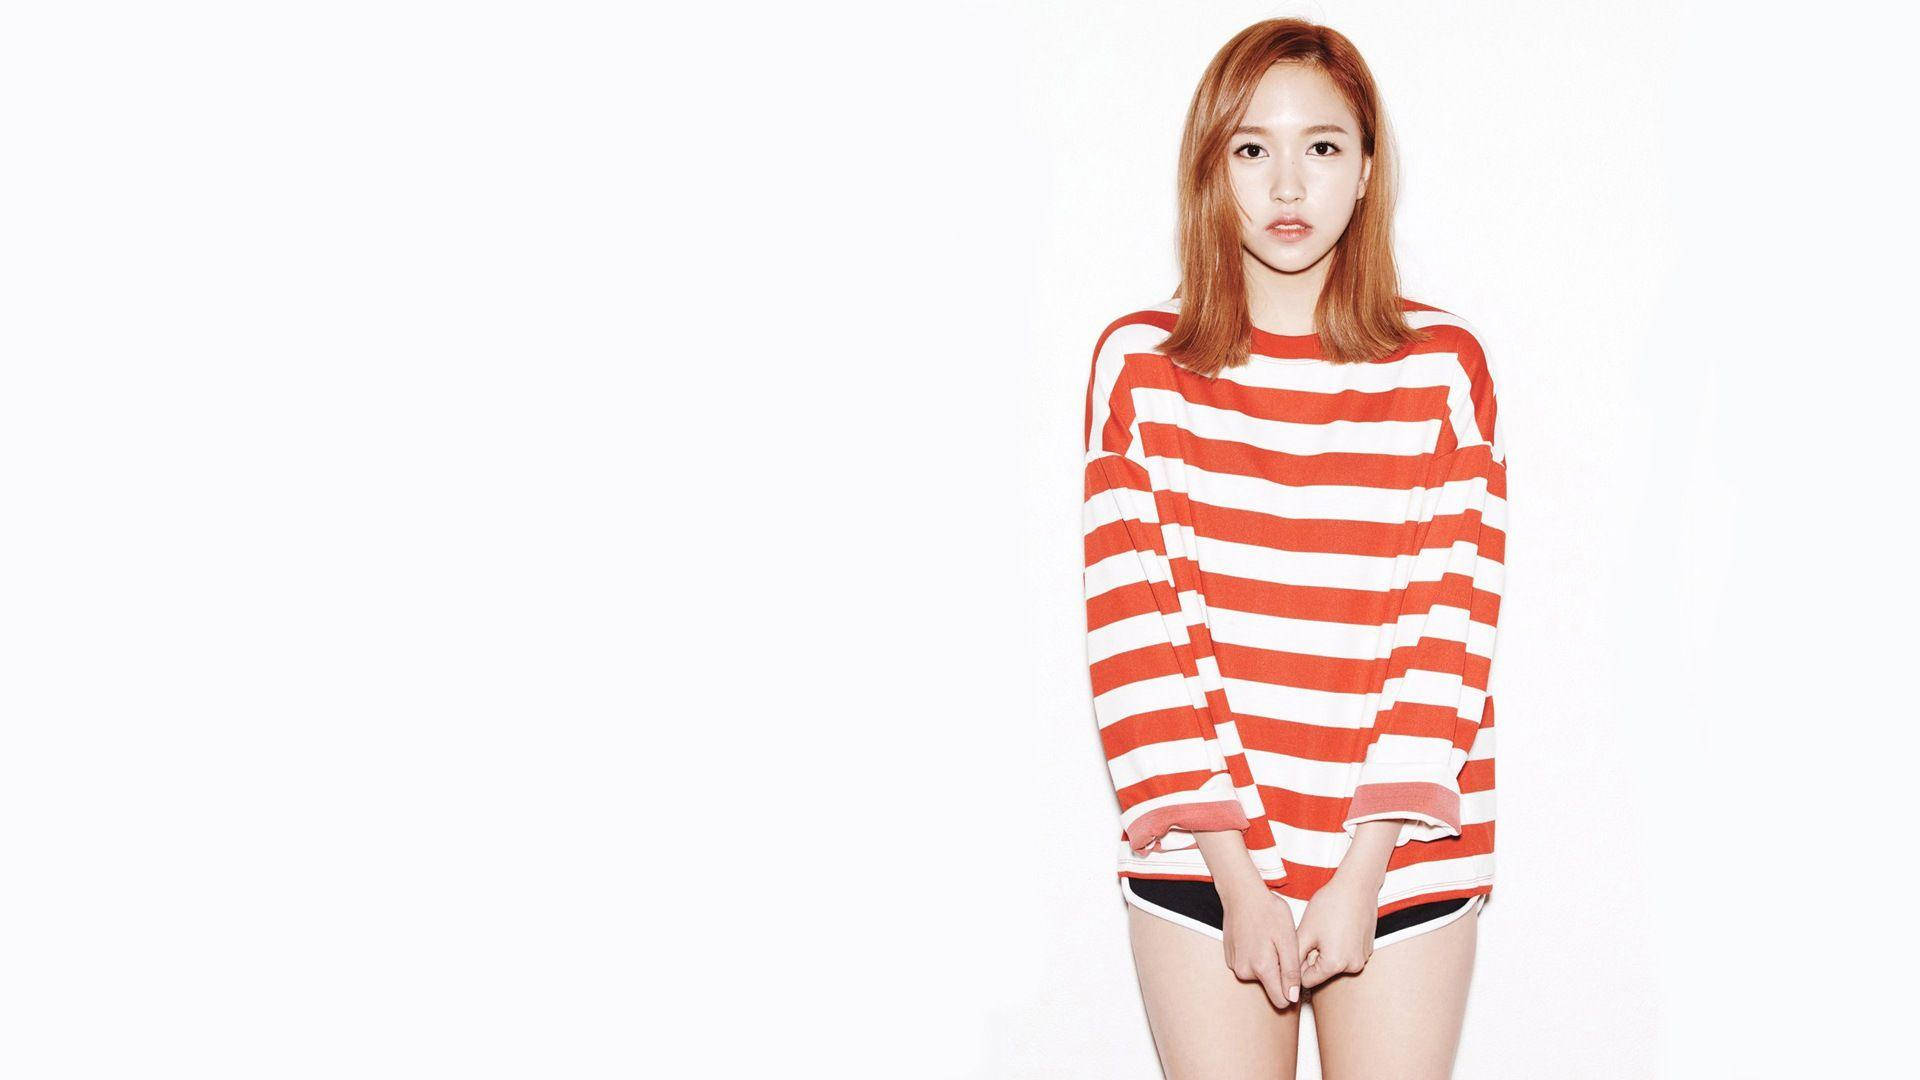 Twice Member Mina In Stripes Wallpaper